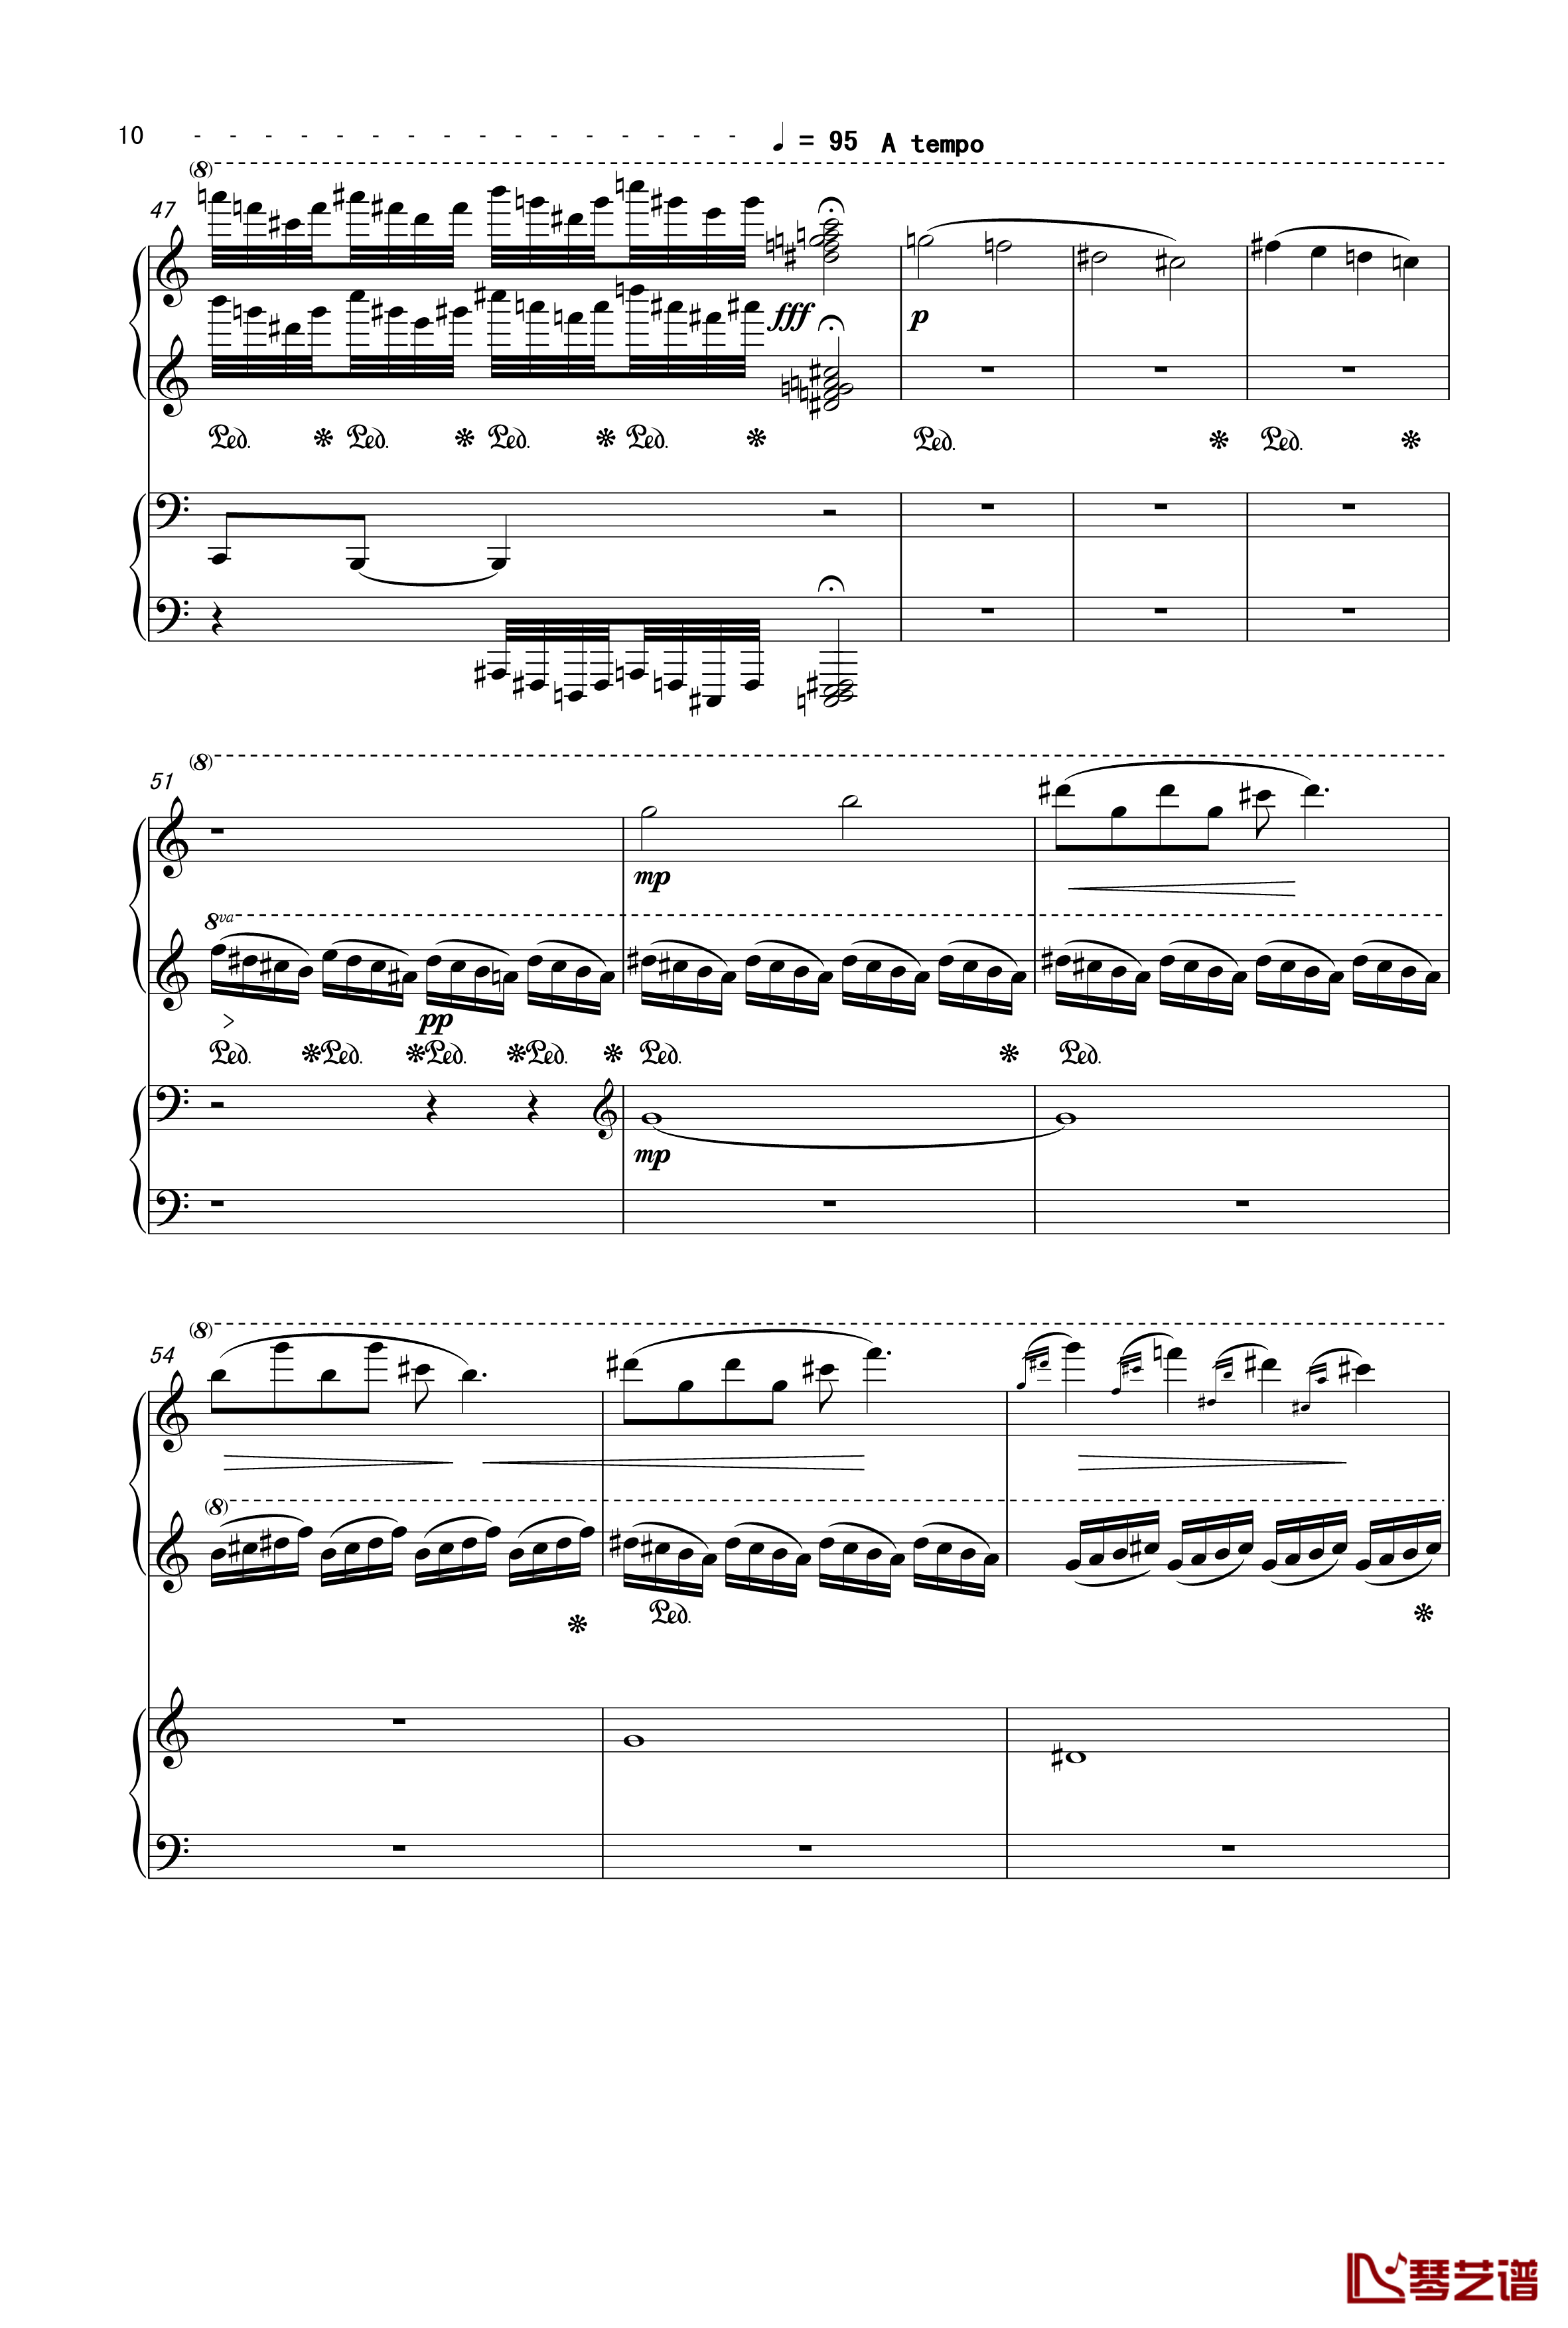 魔镜钢琴谱-曲乐曲乐乐10